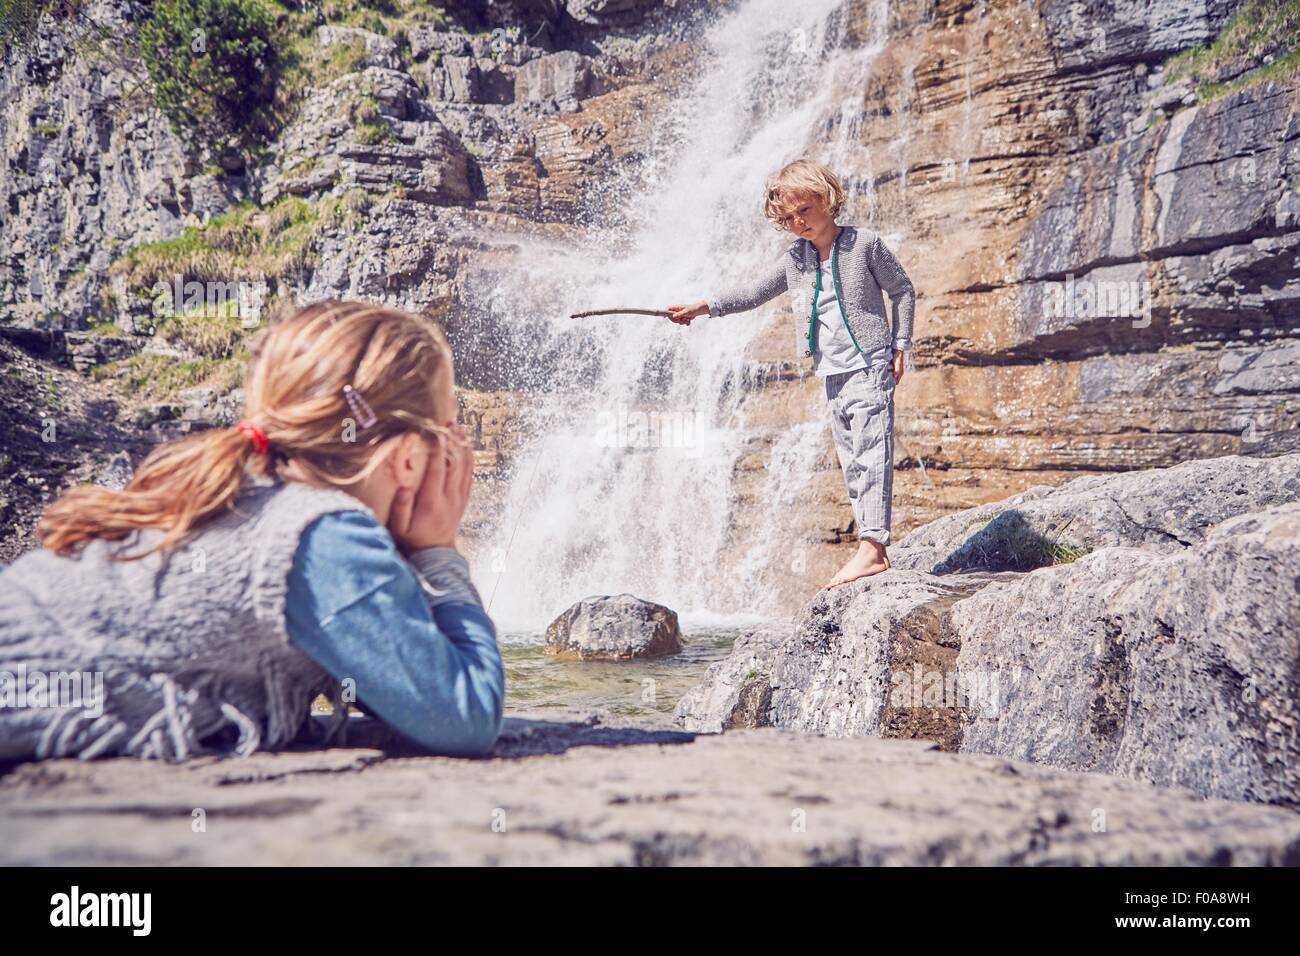 Jeune fille regardant frère, debout à côté d'une chute d'eau Banque D'Images